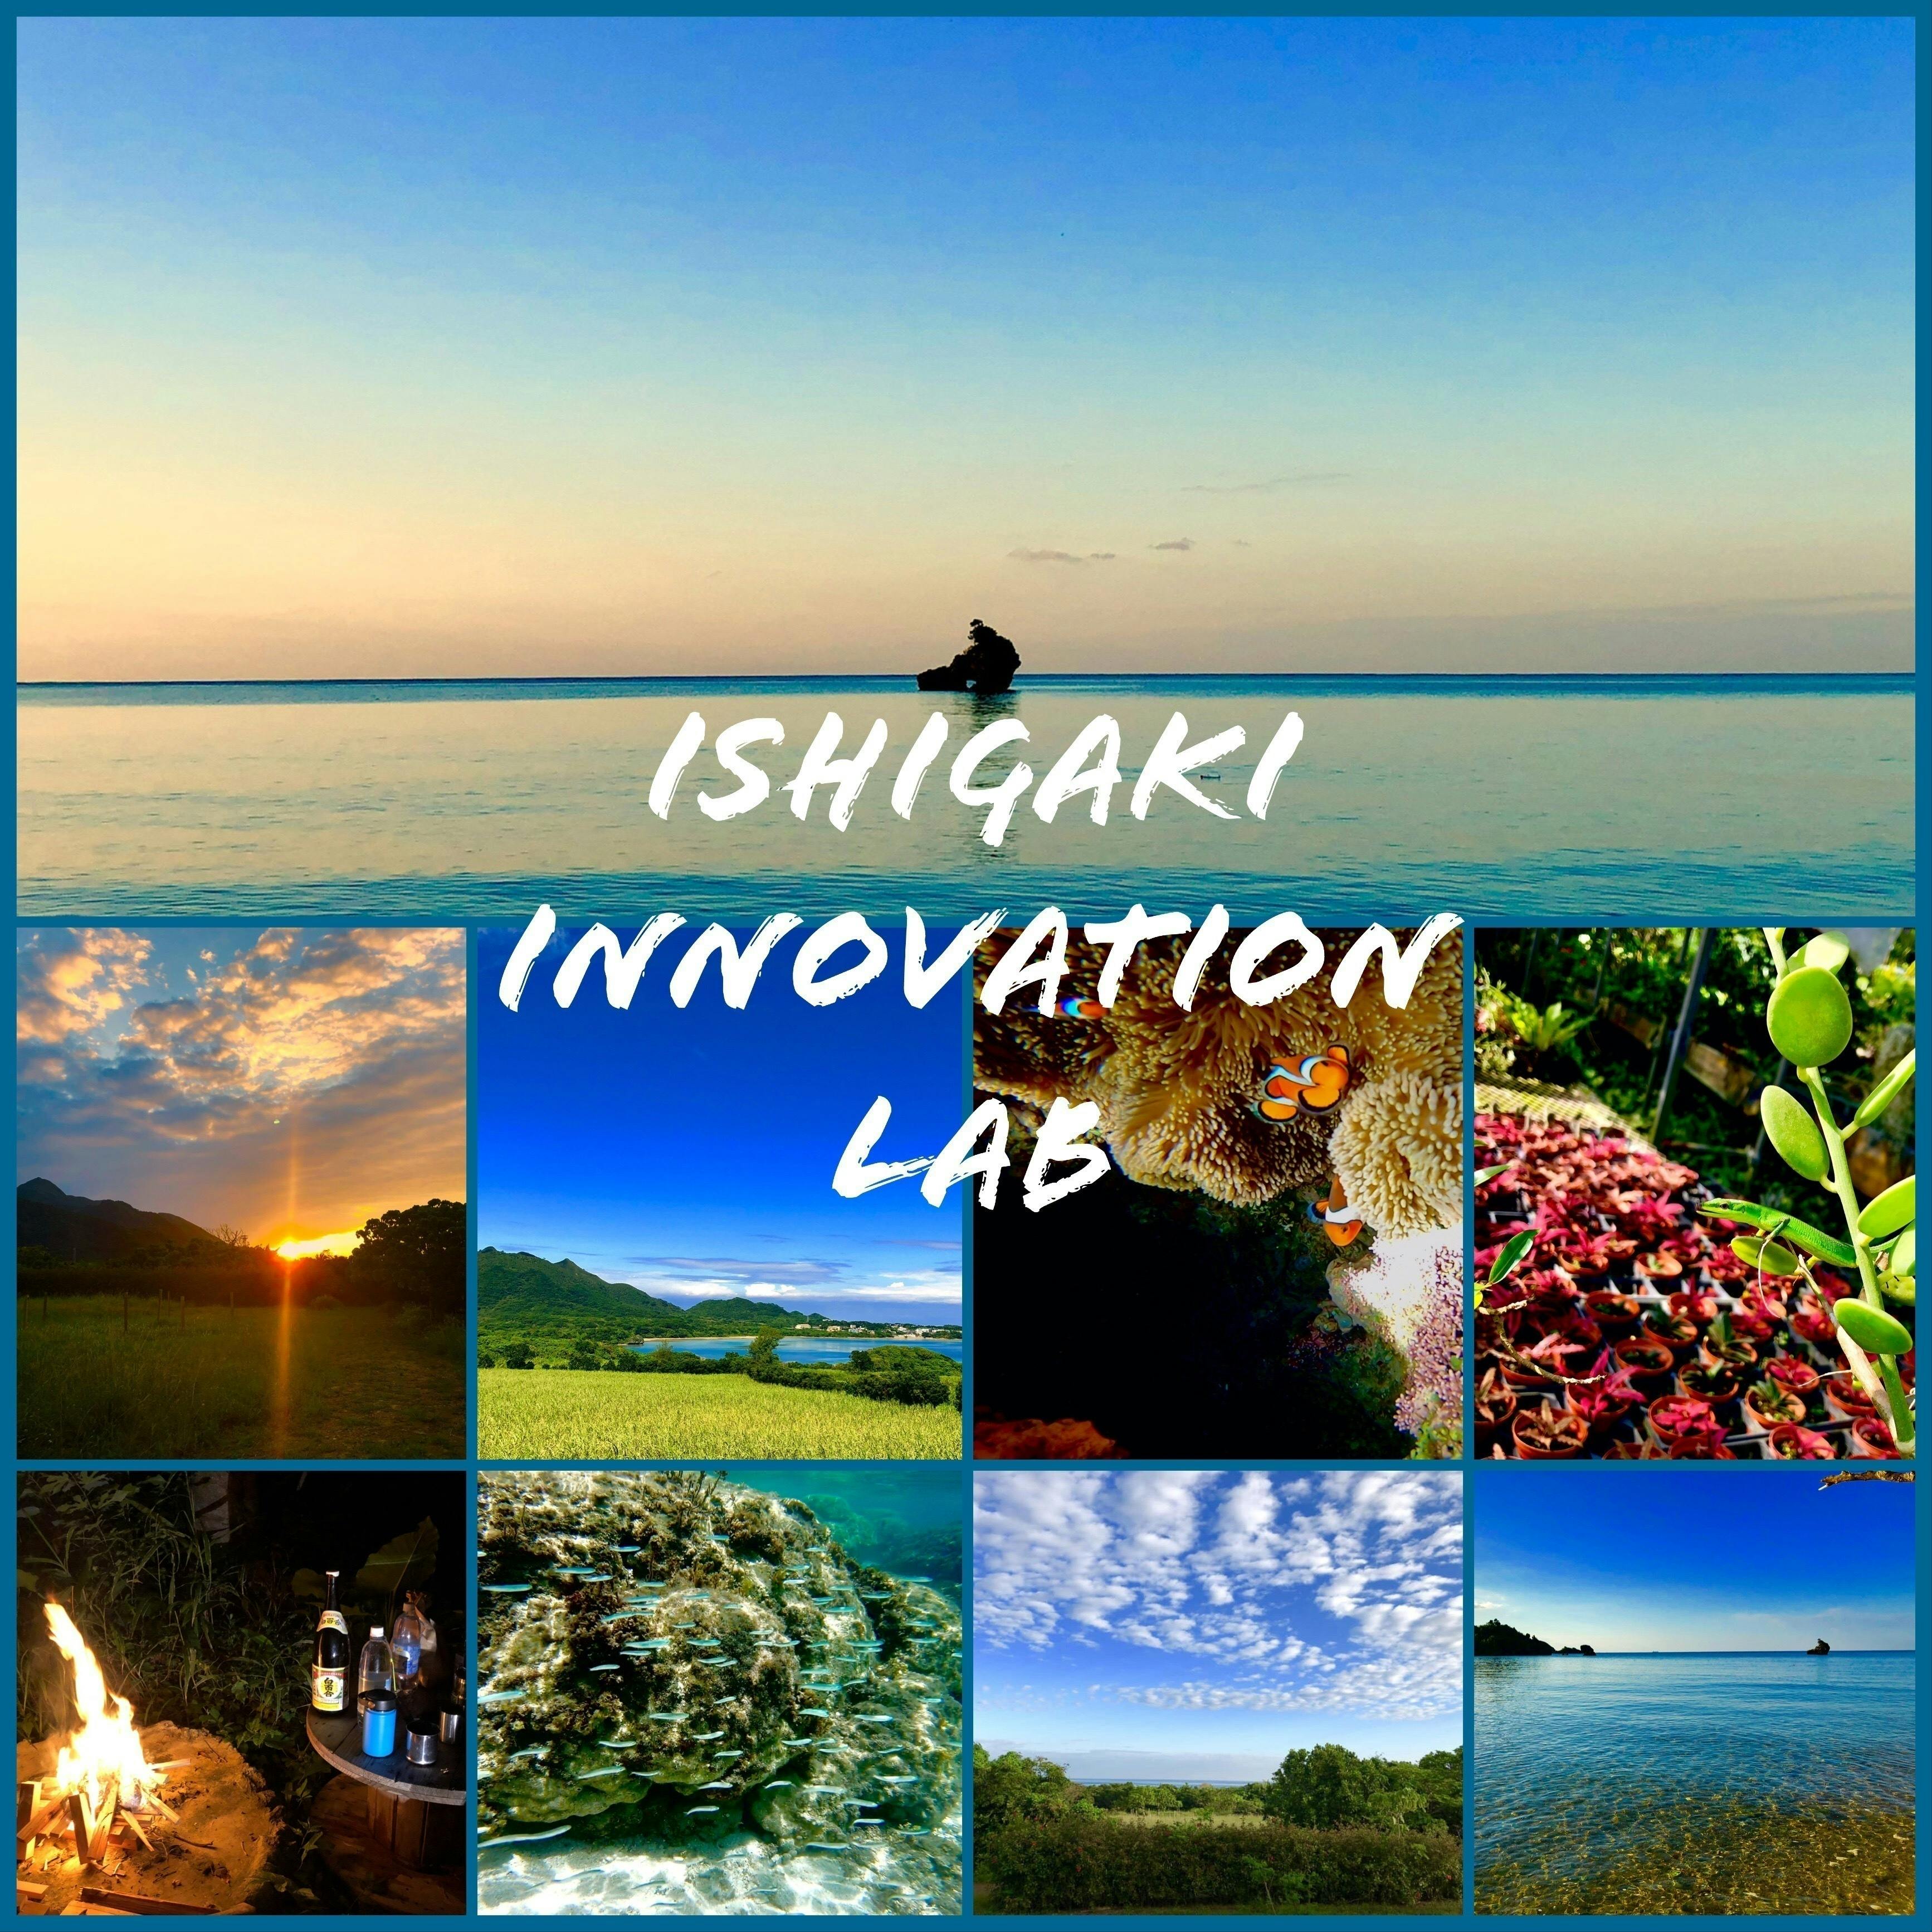 Ishigaki innovation labo【石垣島イノベーションラボ】